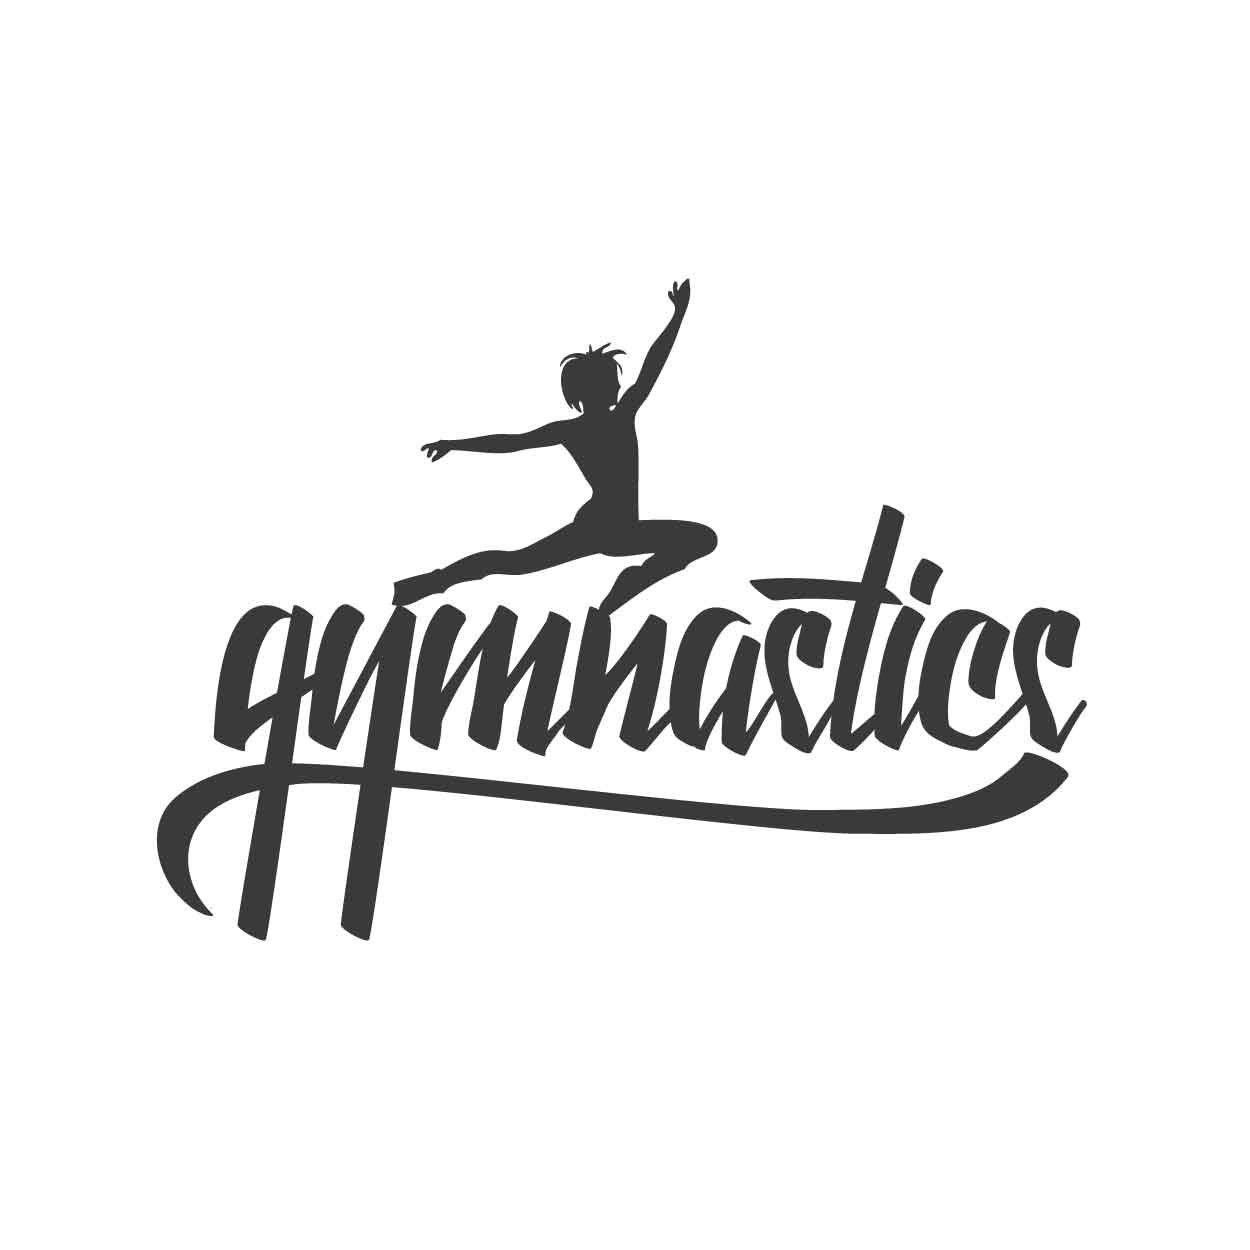 I Love Gymnastics Wallpapers Wallpaper Cave